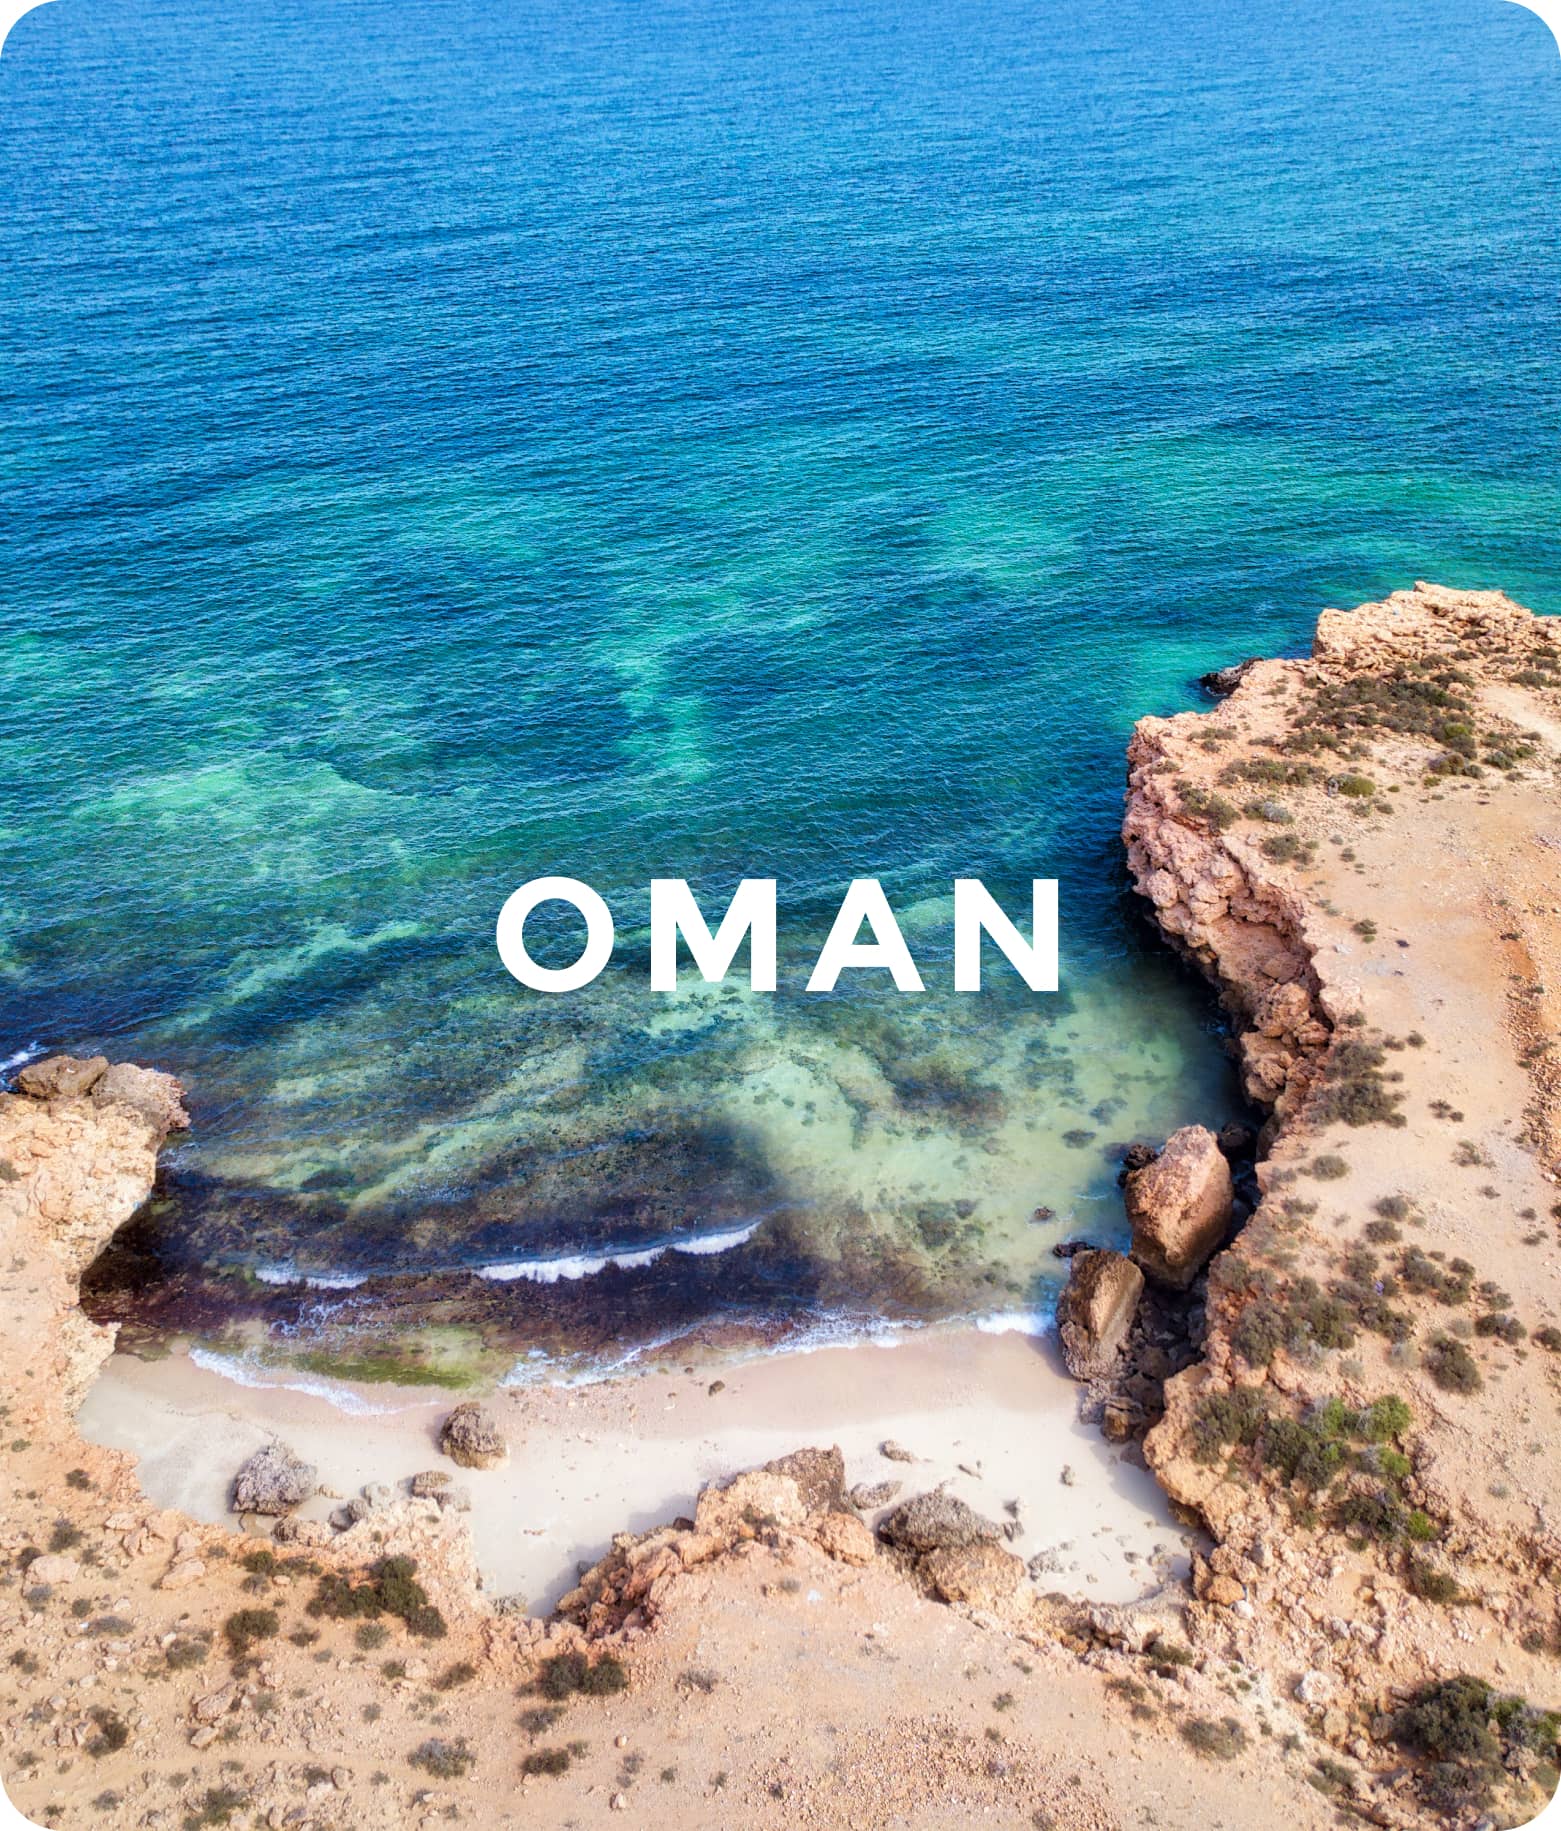 Oman - The Sultanate